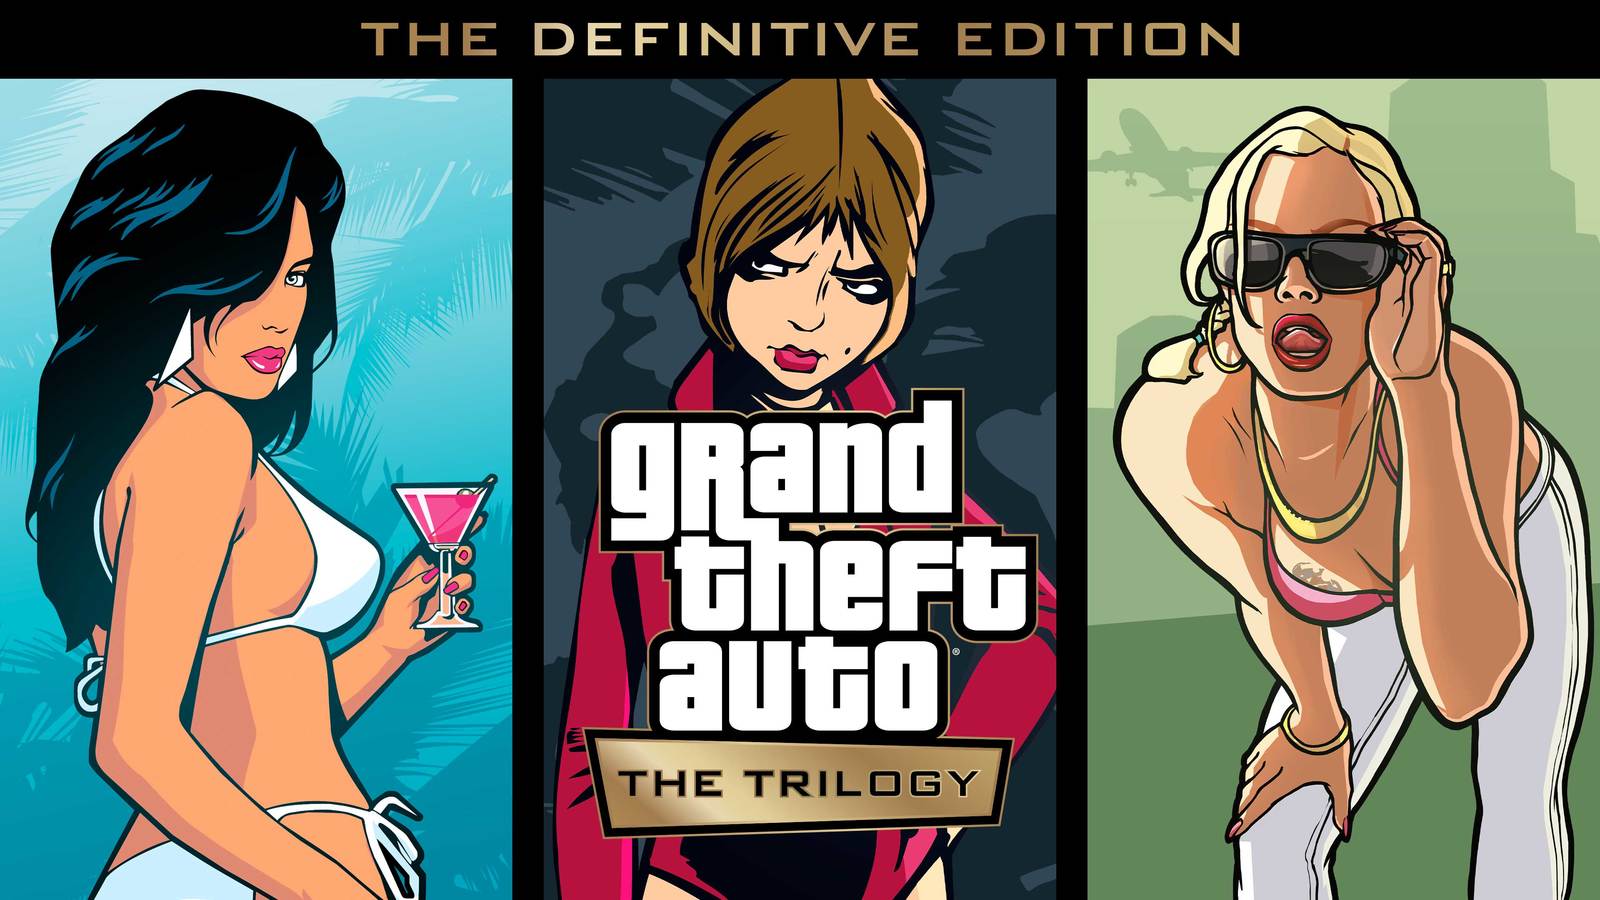 Обновлённая трилогия Grand Theft Auto: The Trilogy — The Definitive Edition анонсирована. Она выйдет даже на смартфонах